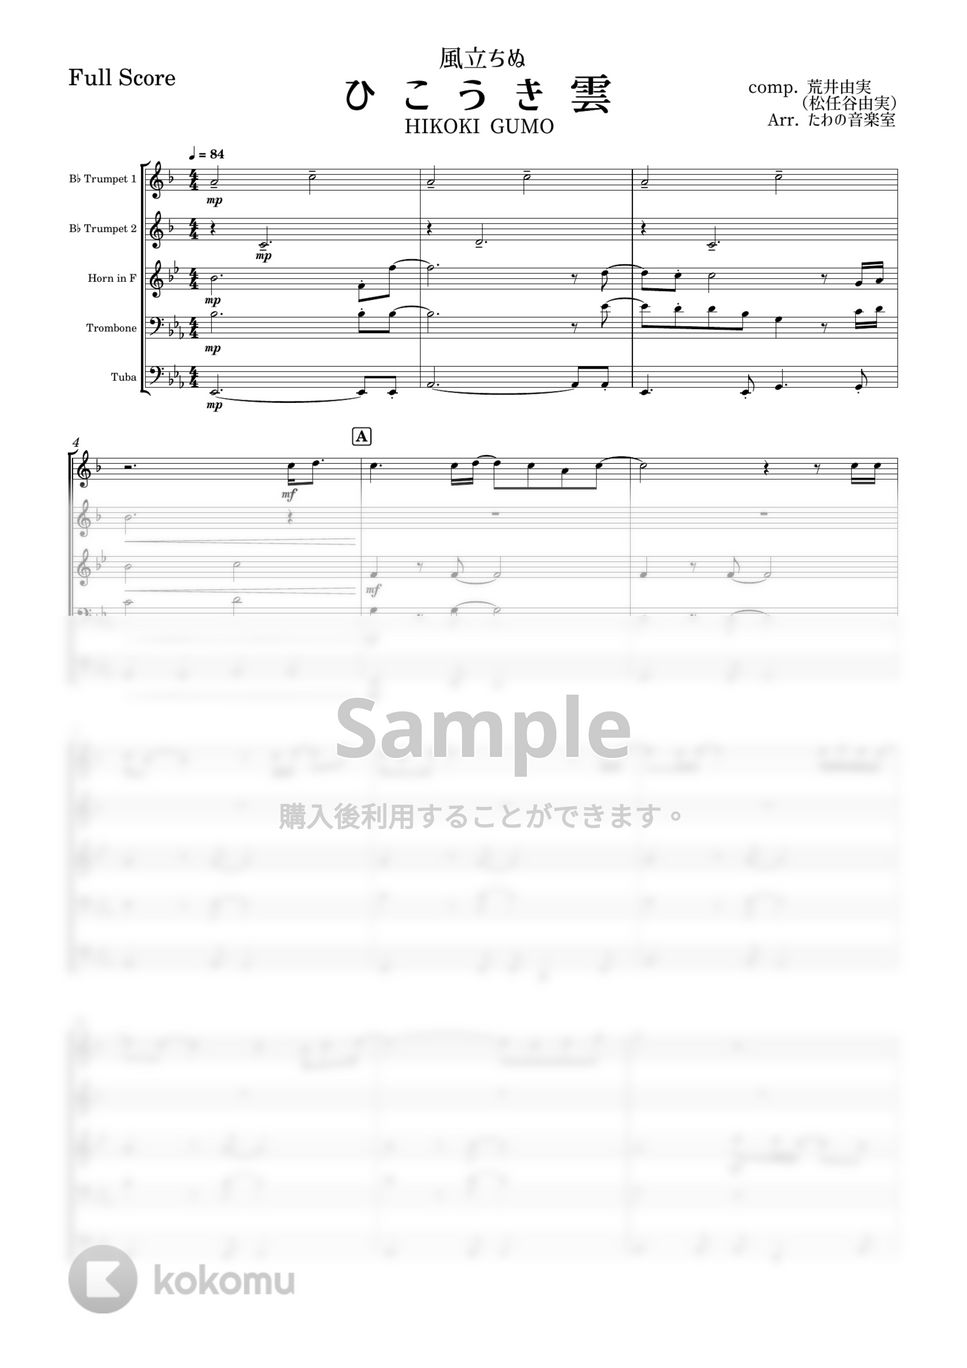 荒井 由美 - ひこうき雲 (金管五重奏 / Trp.1 Trp.2  Hr. Trb. Tub) by たわの音楽室